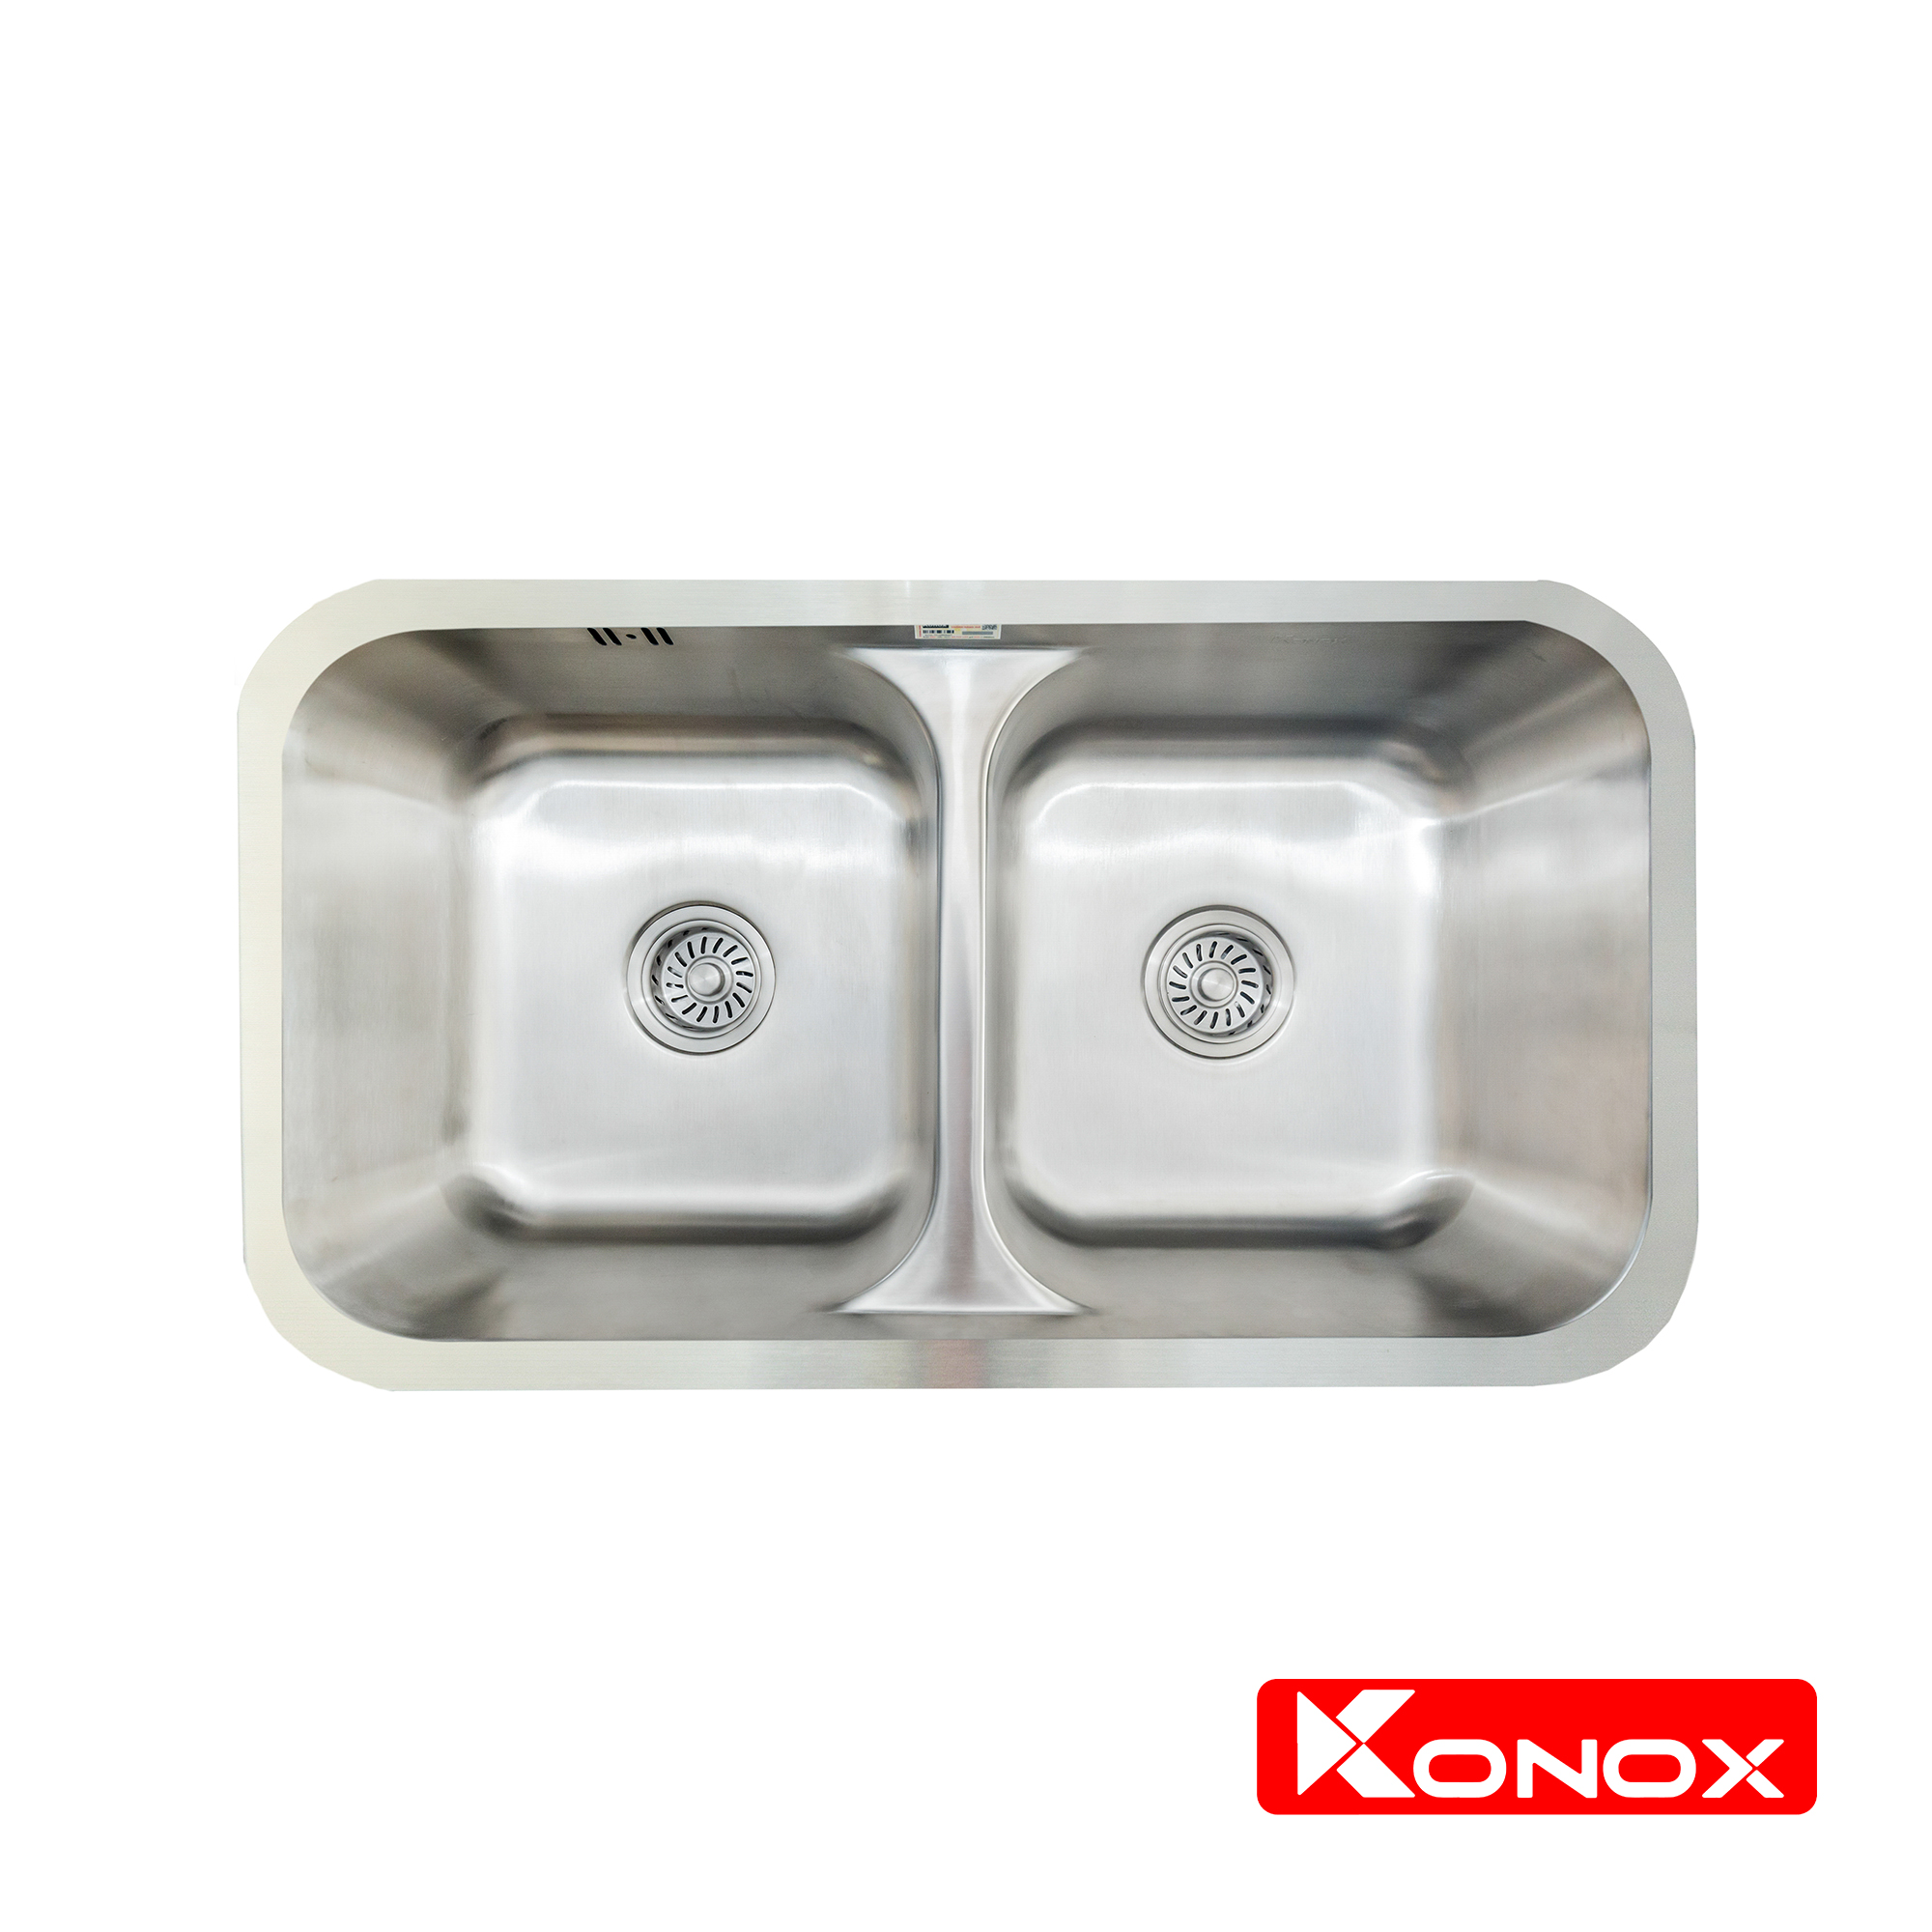 Chậu rửa bát Konox, Undermount Series, Model KN8246DUA, Inox 304AISI tiêu chuẩn châu Âu, 820x460x220(mm), Hàng chính hãng